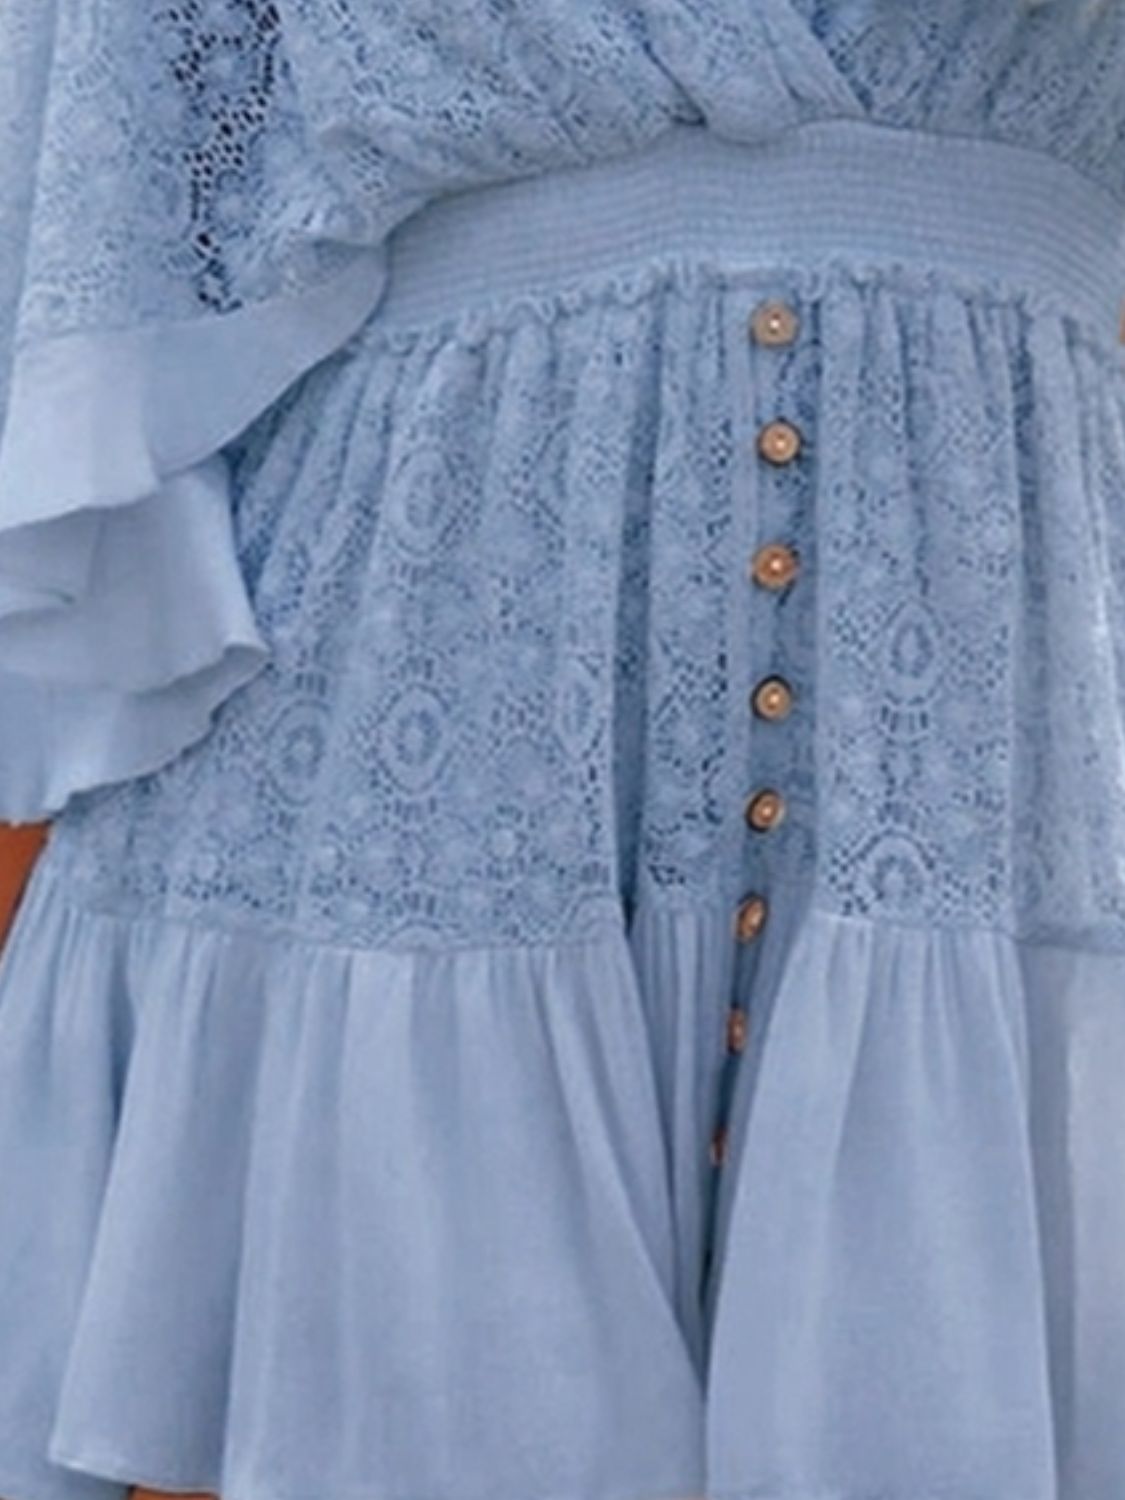 TEEK - Lace Cutout Half Sleeve Mini Dress DRESS TEEK Trend   